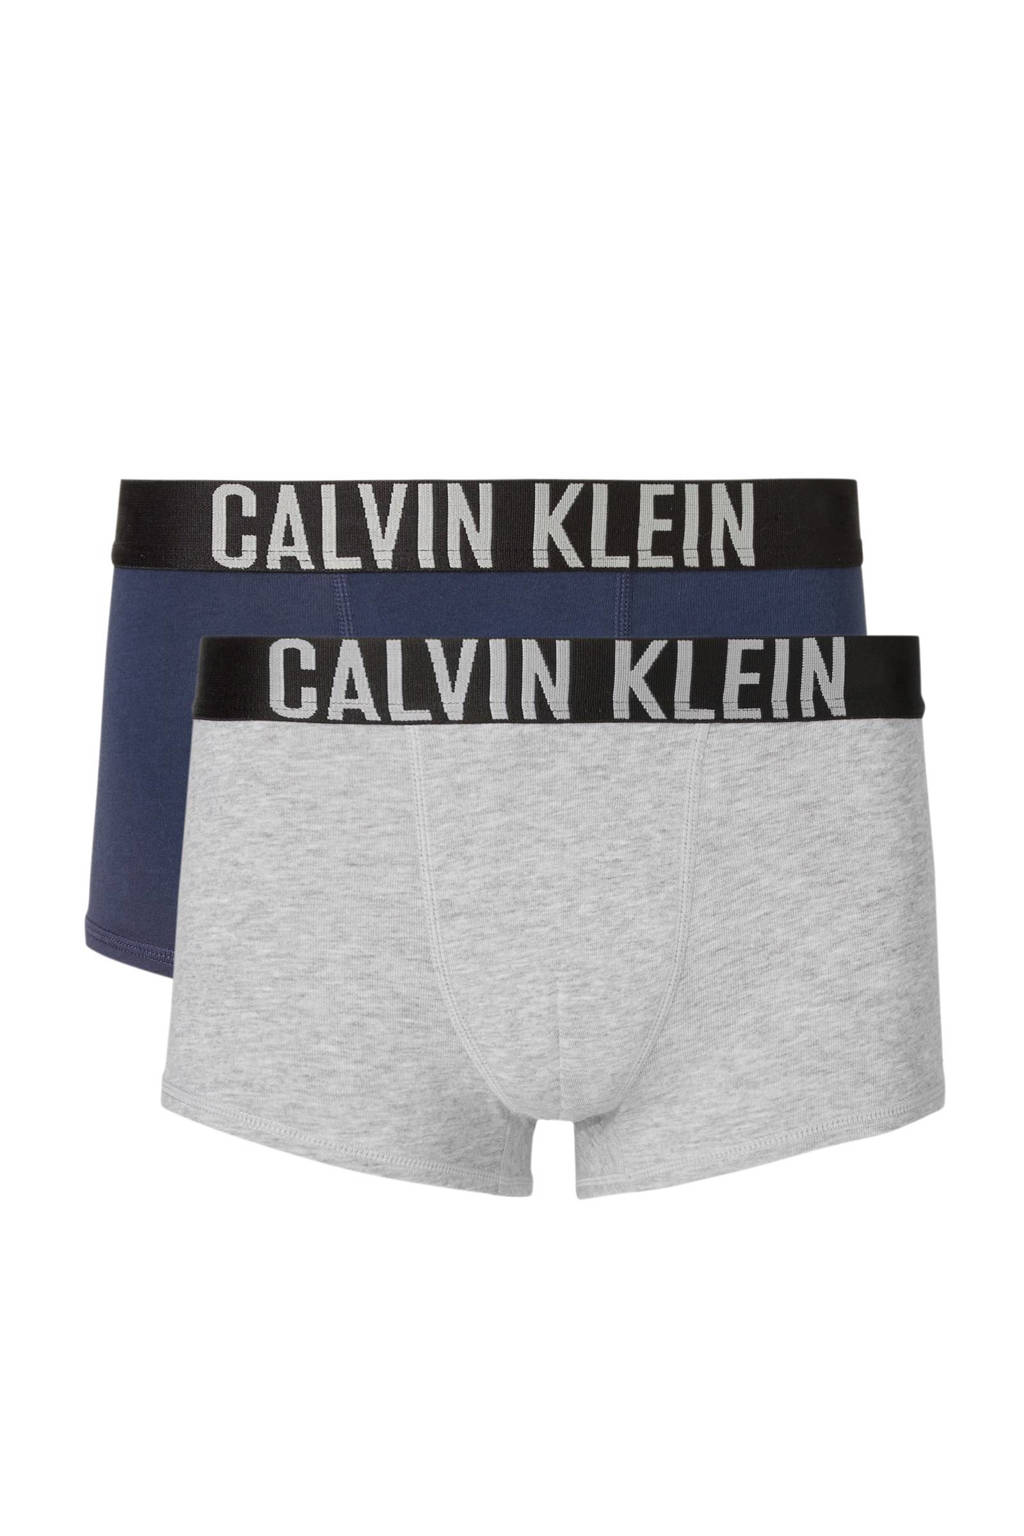 CALVIN KLEIN UNDERWEAR   boxershort - set van 2 grijs/donkerblauw